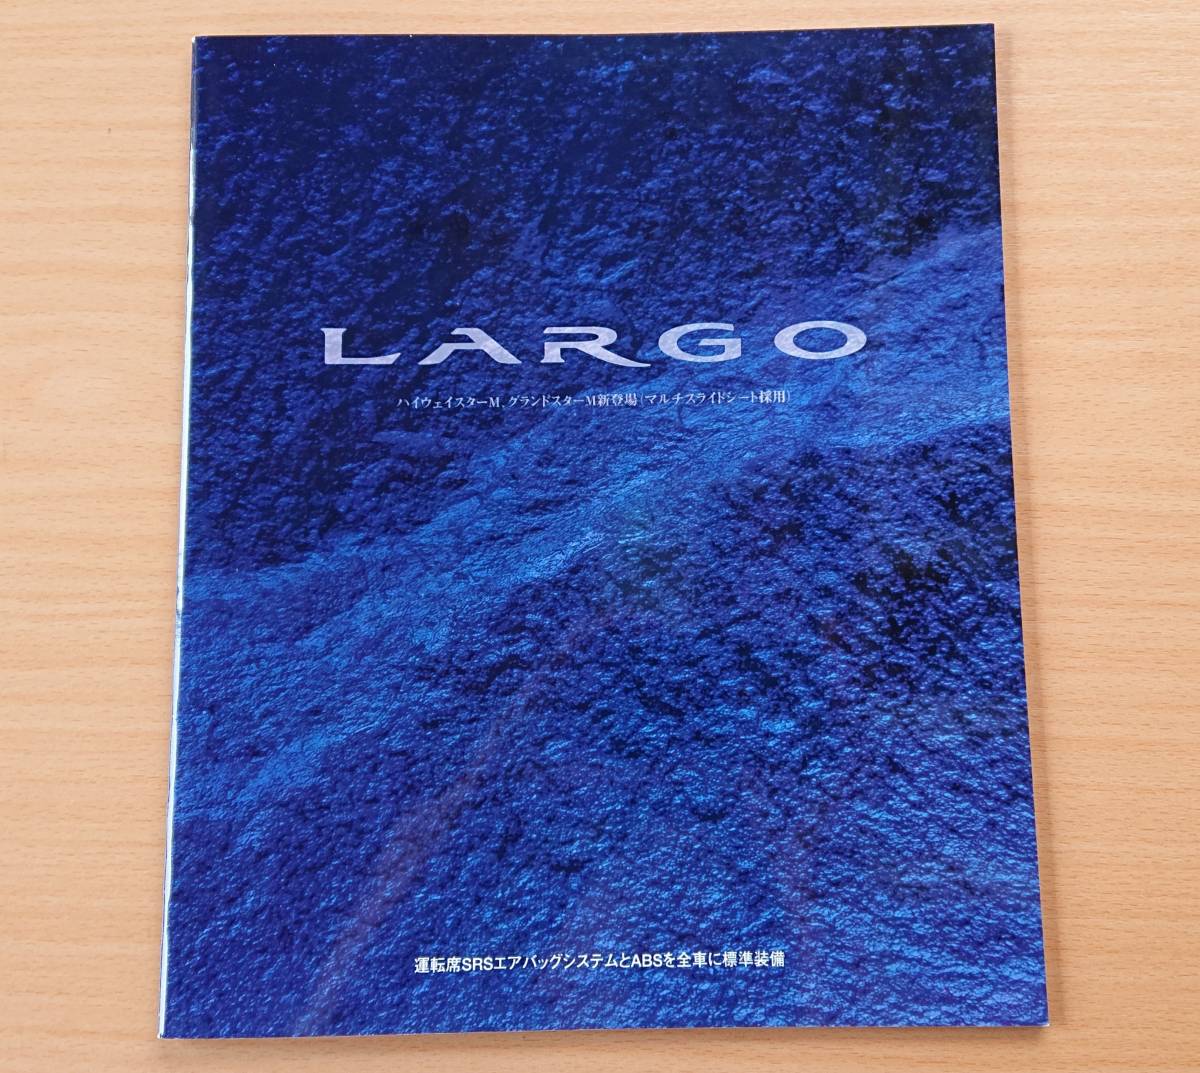 ★日産・ラルゴ LARGO W30型 1997年1月 カタログ★即決価格★_画像1